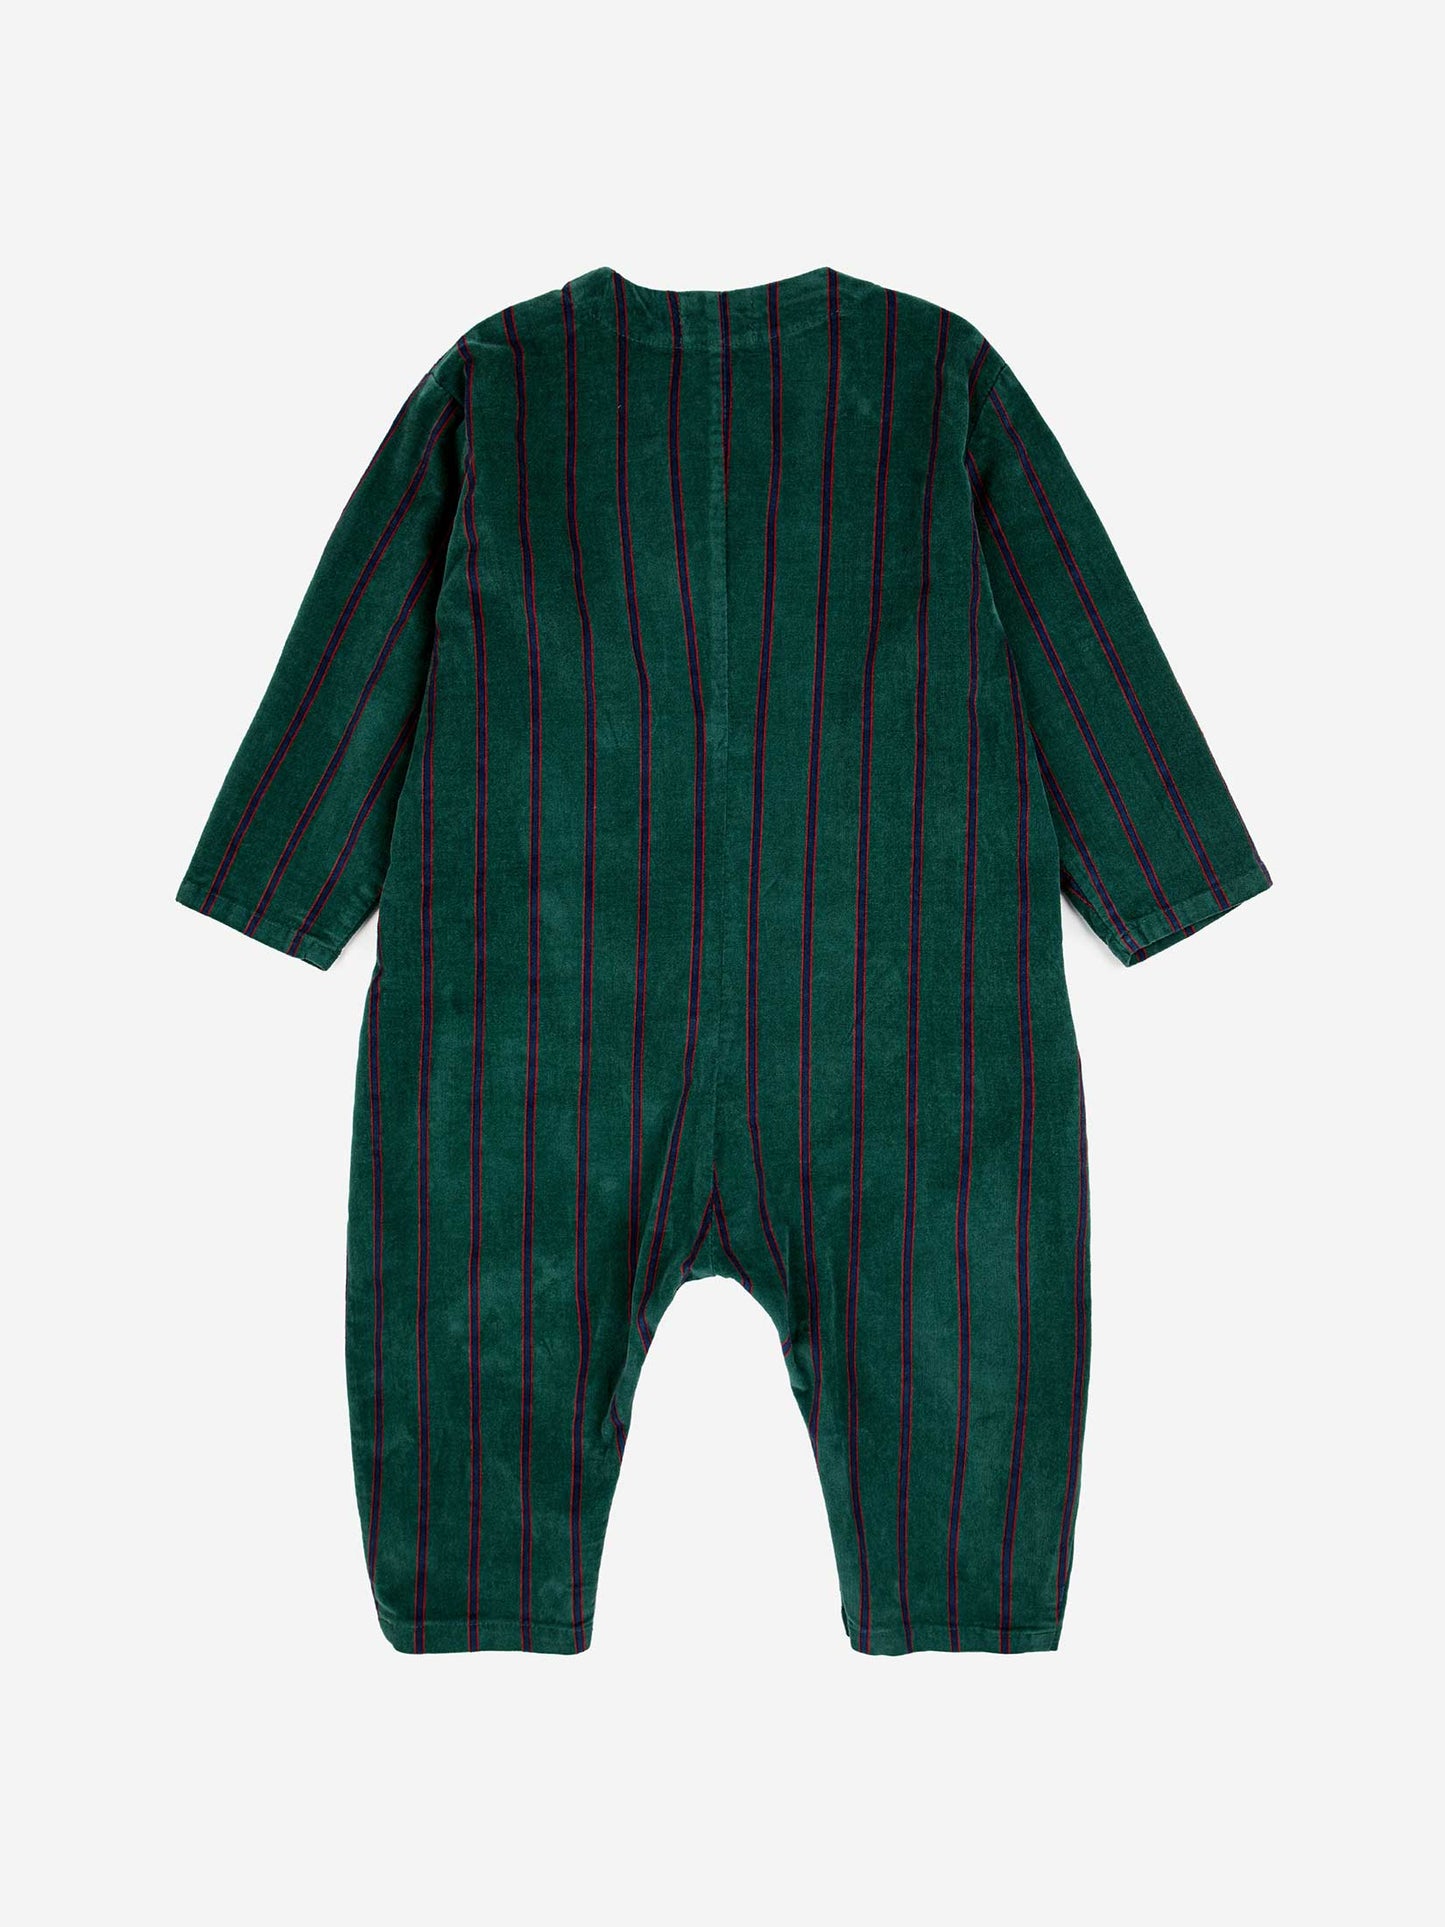 Striped Velvet Baby Overall